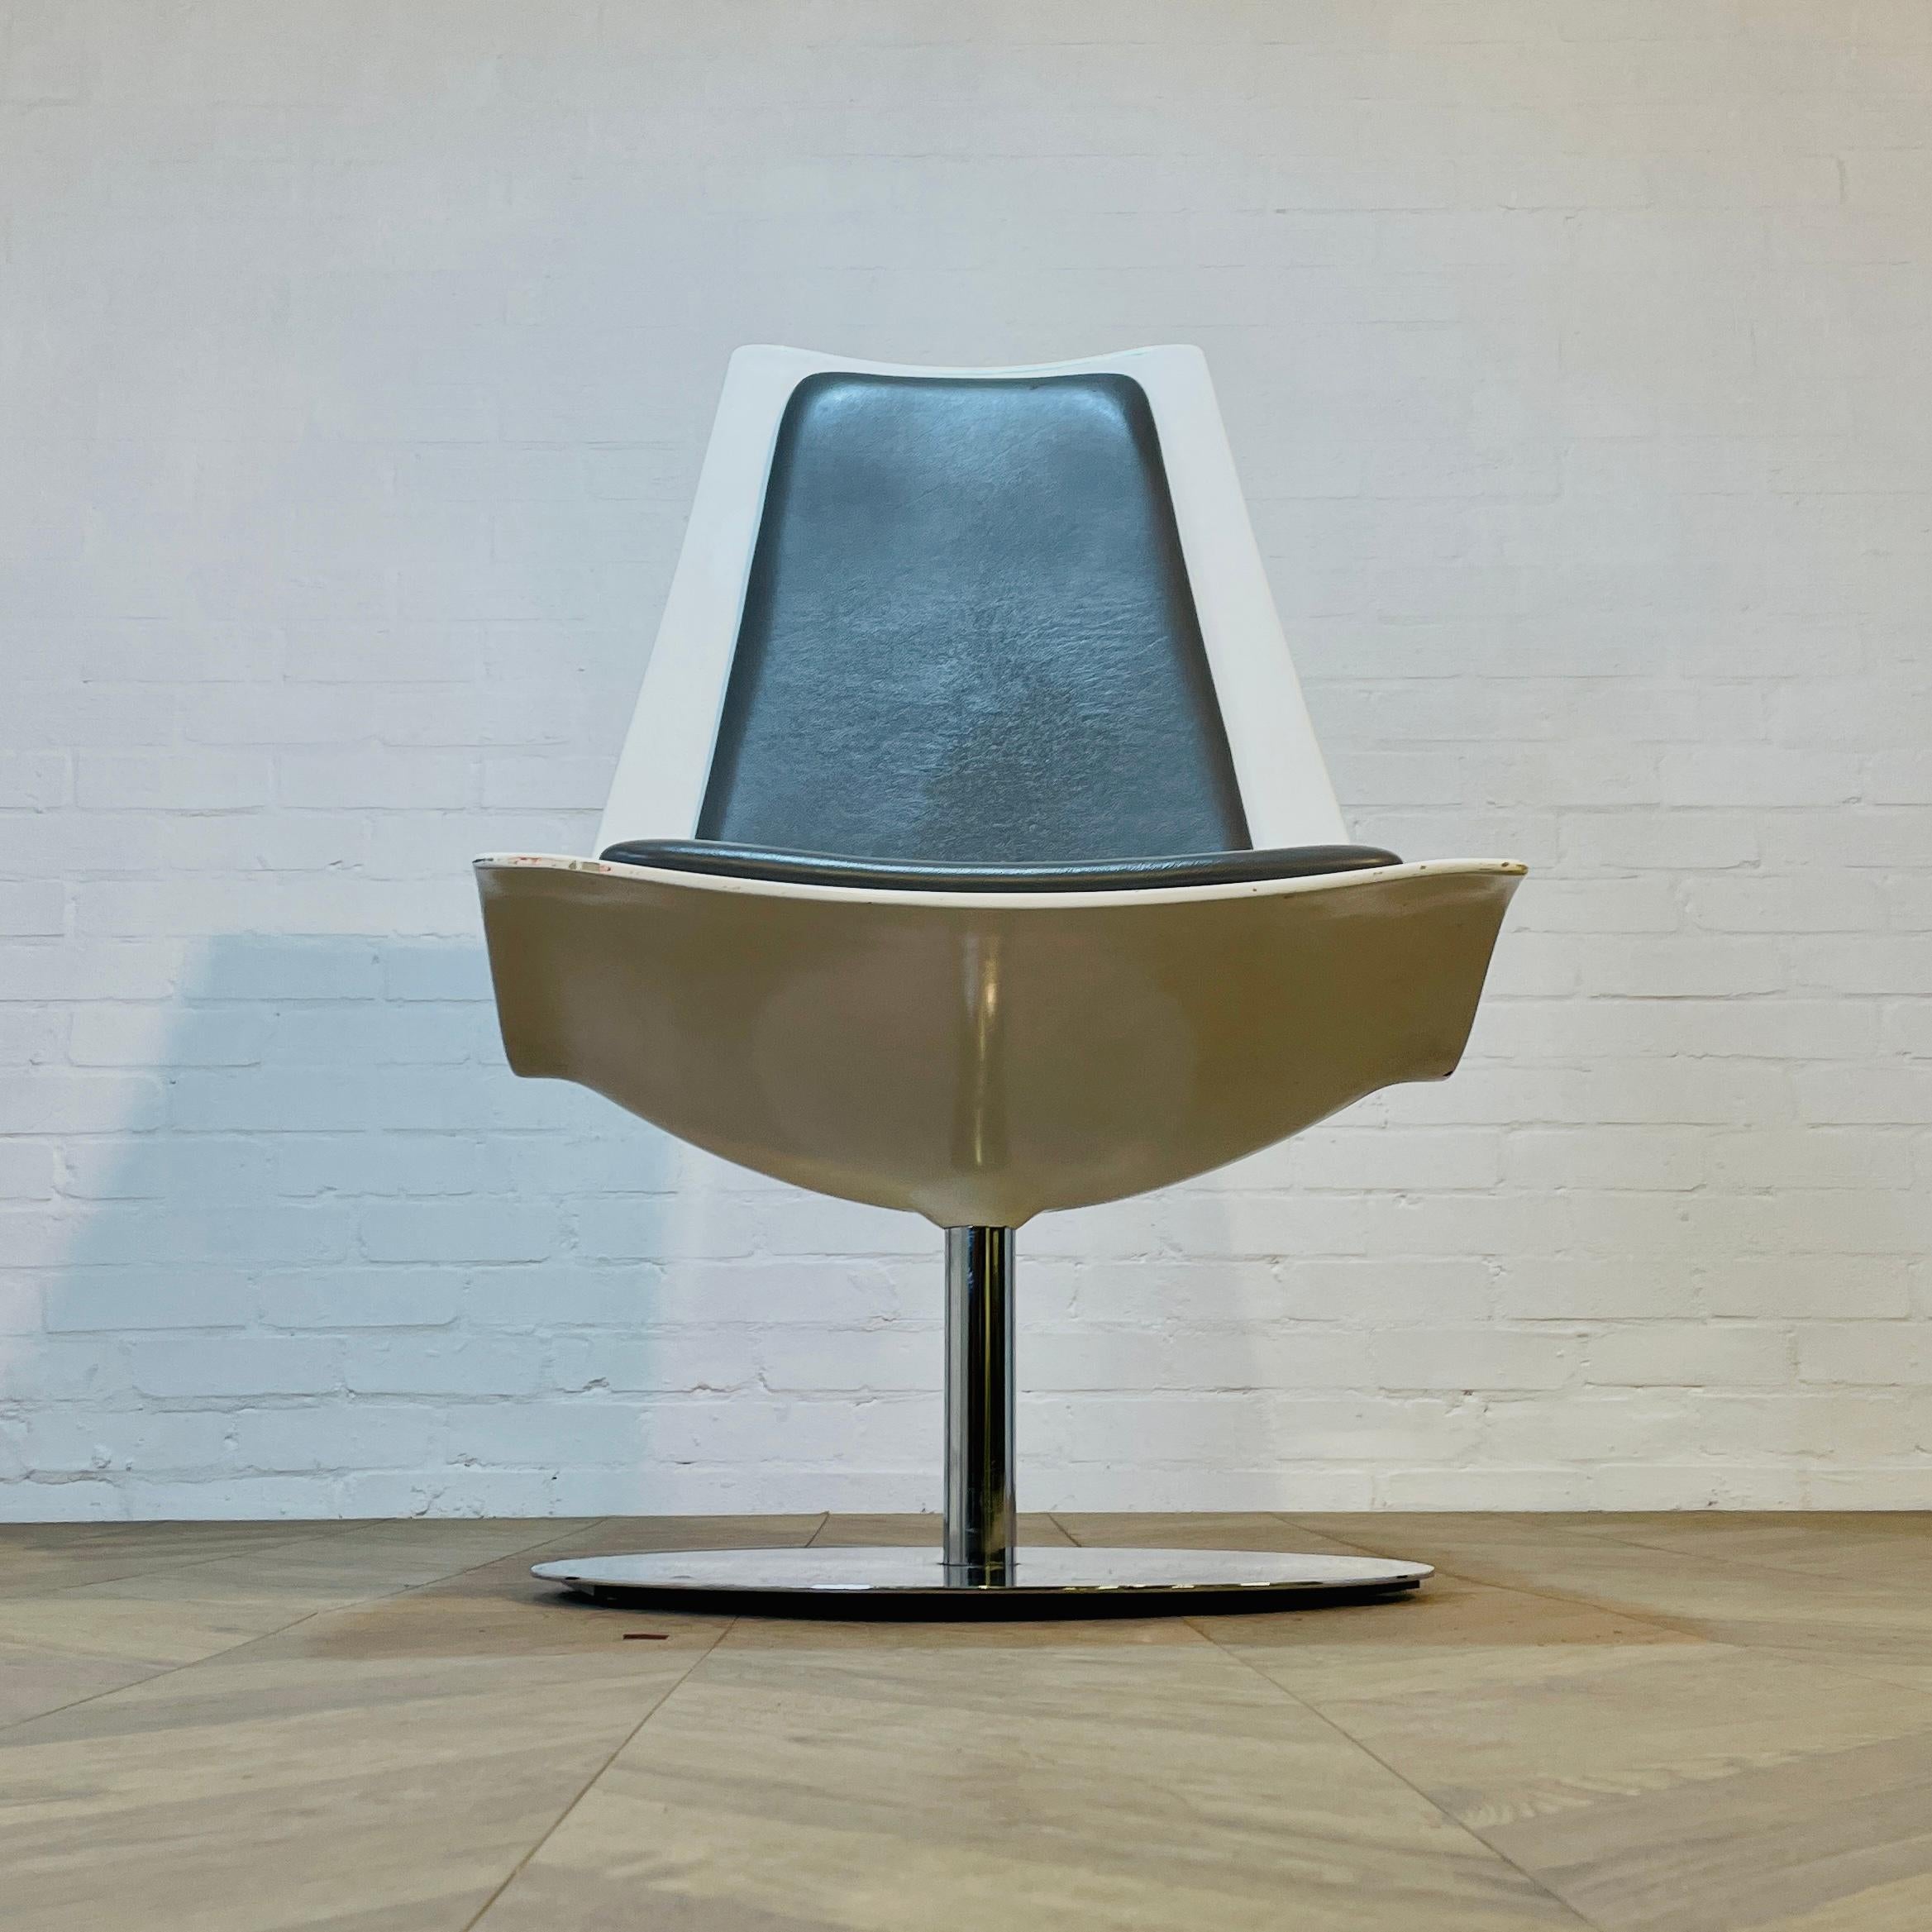 Vintage XPO Drehstuhl von BO Concept auf Chromgestell.

Der superschwere Stuhl ist mit grauen Sitzpads aus Kunstleder und einer weißen Hartschale ausgestattet und befindet sich in einem guten Vintage-Zustand mit leichten Gebrauchsspuren am Gestell,